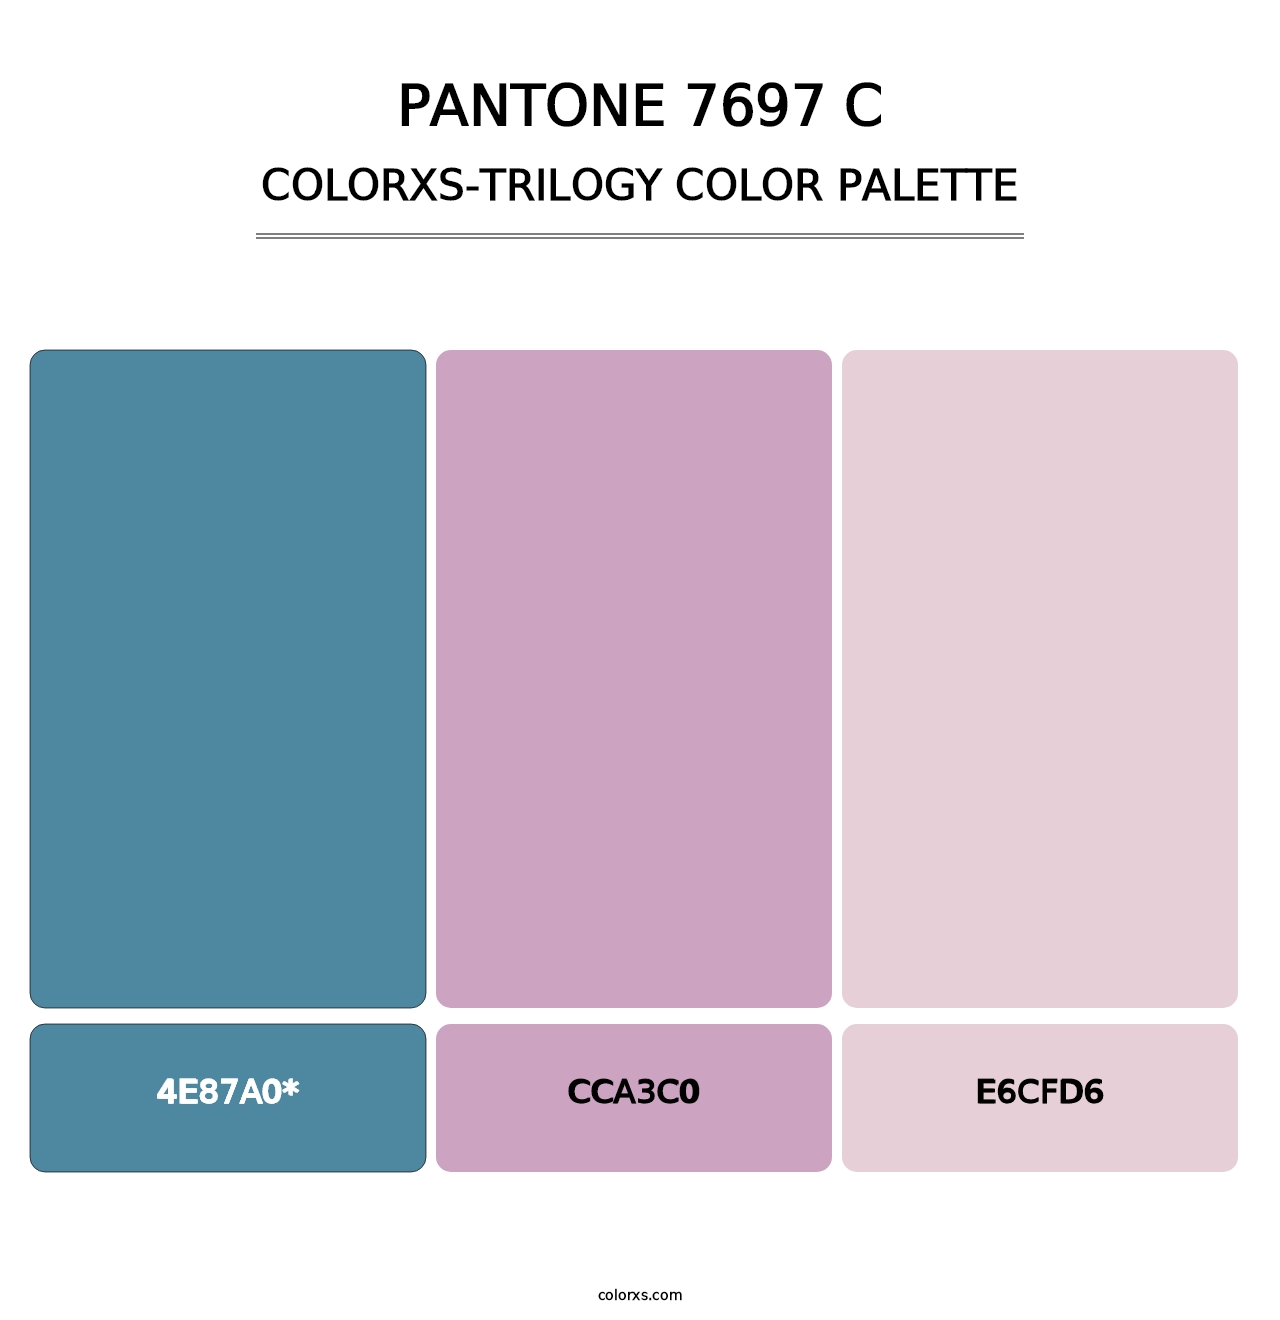 PANTONE 7697 C - Colorxs Trilogy Palette